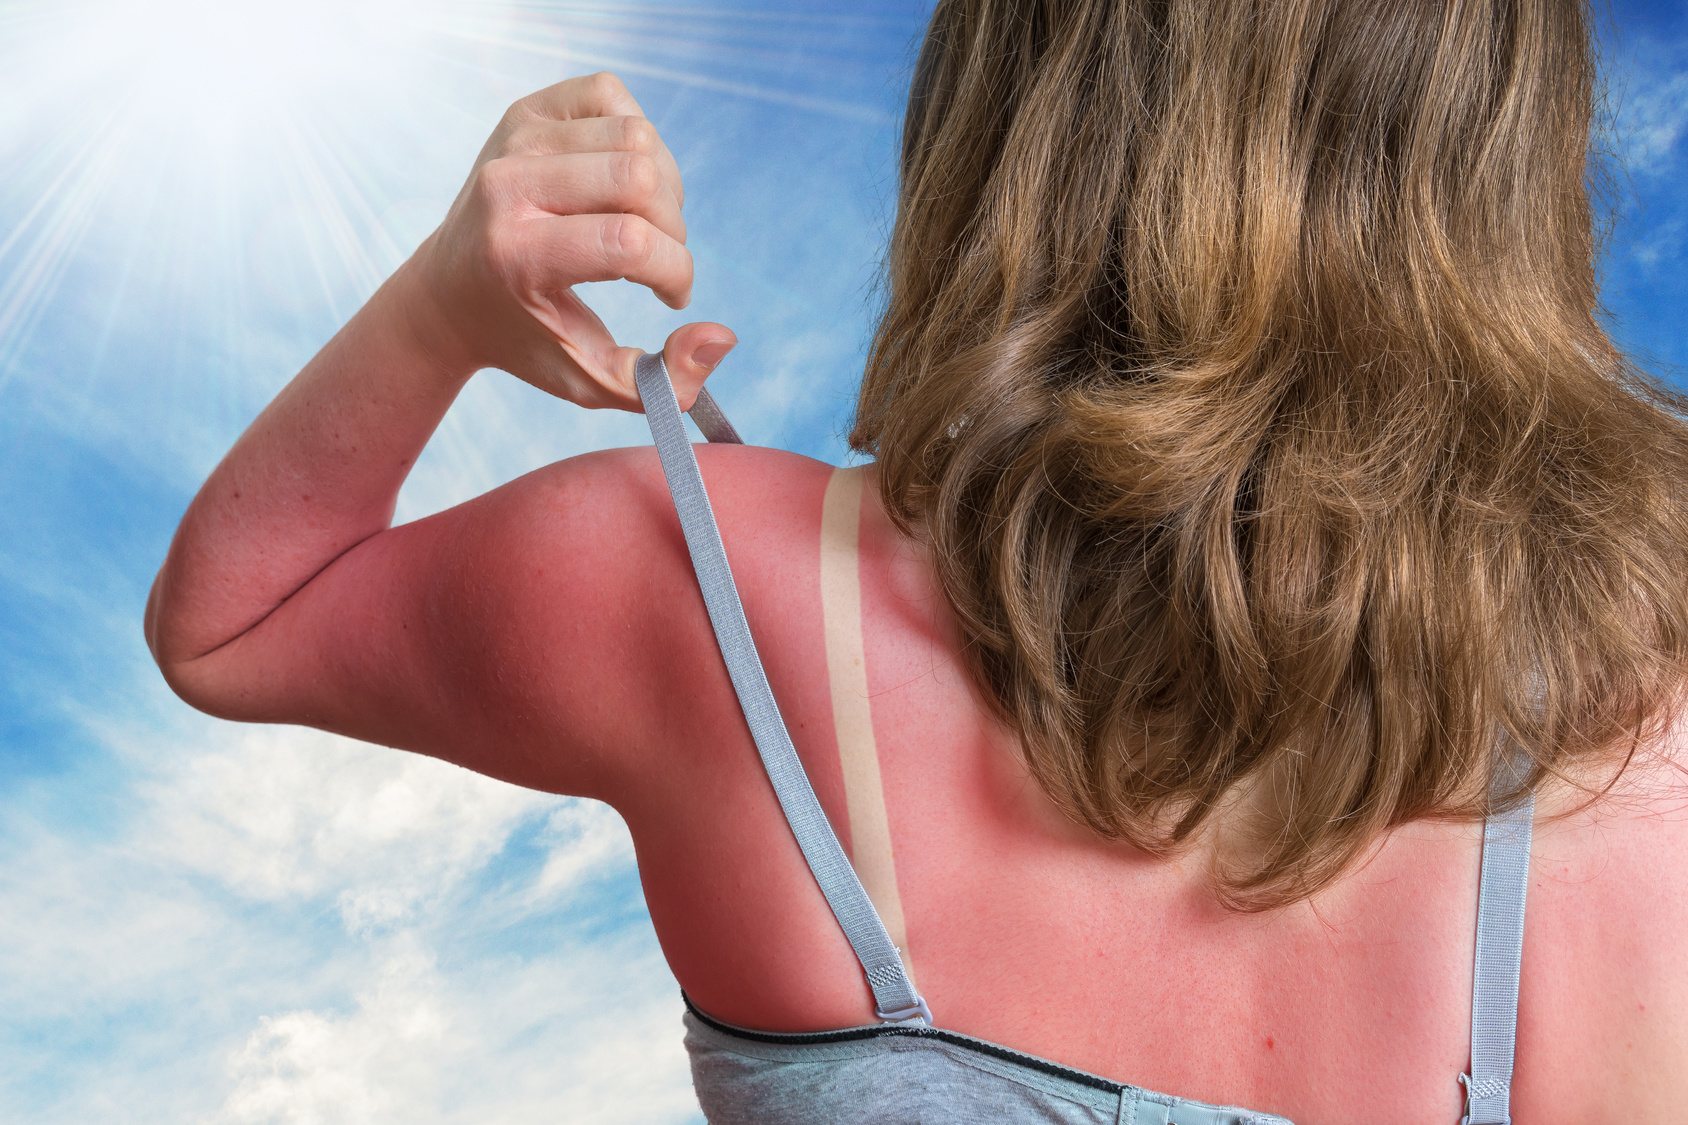 Eine Frau steht in freiem unter blauem Himmel. Ihr Rücken und die Schultern weisen einen starken Sonnenbrand auf.